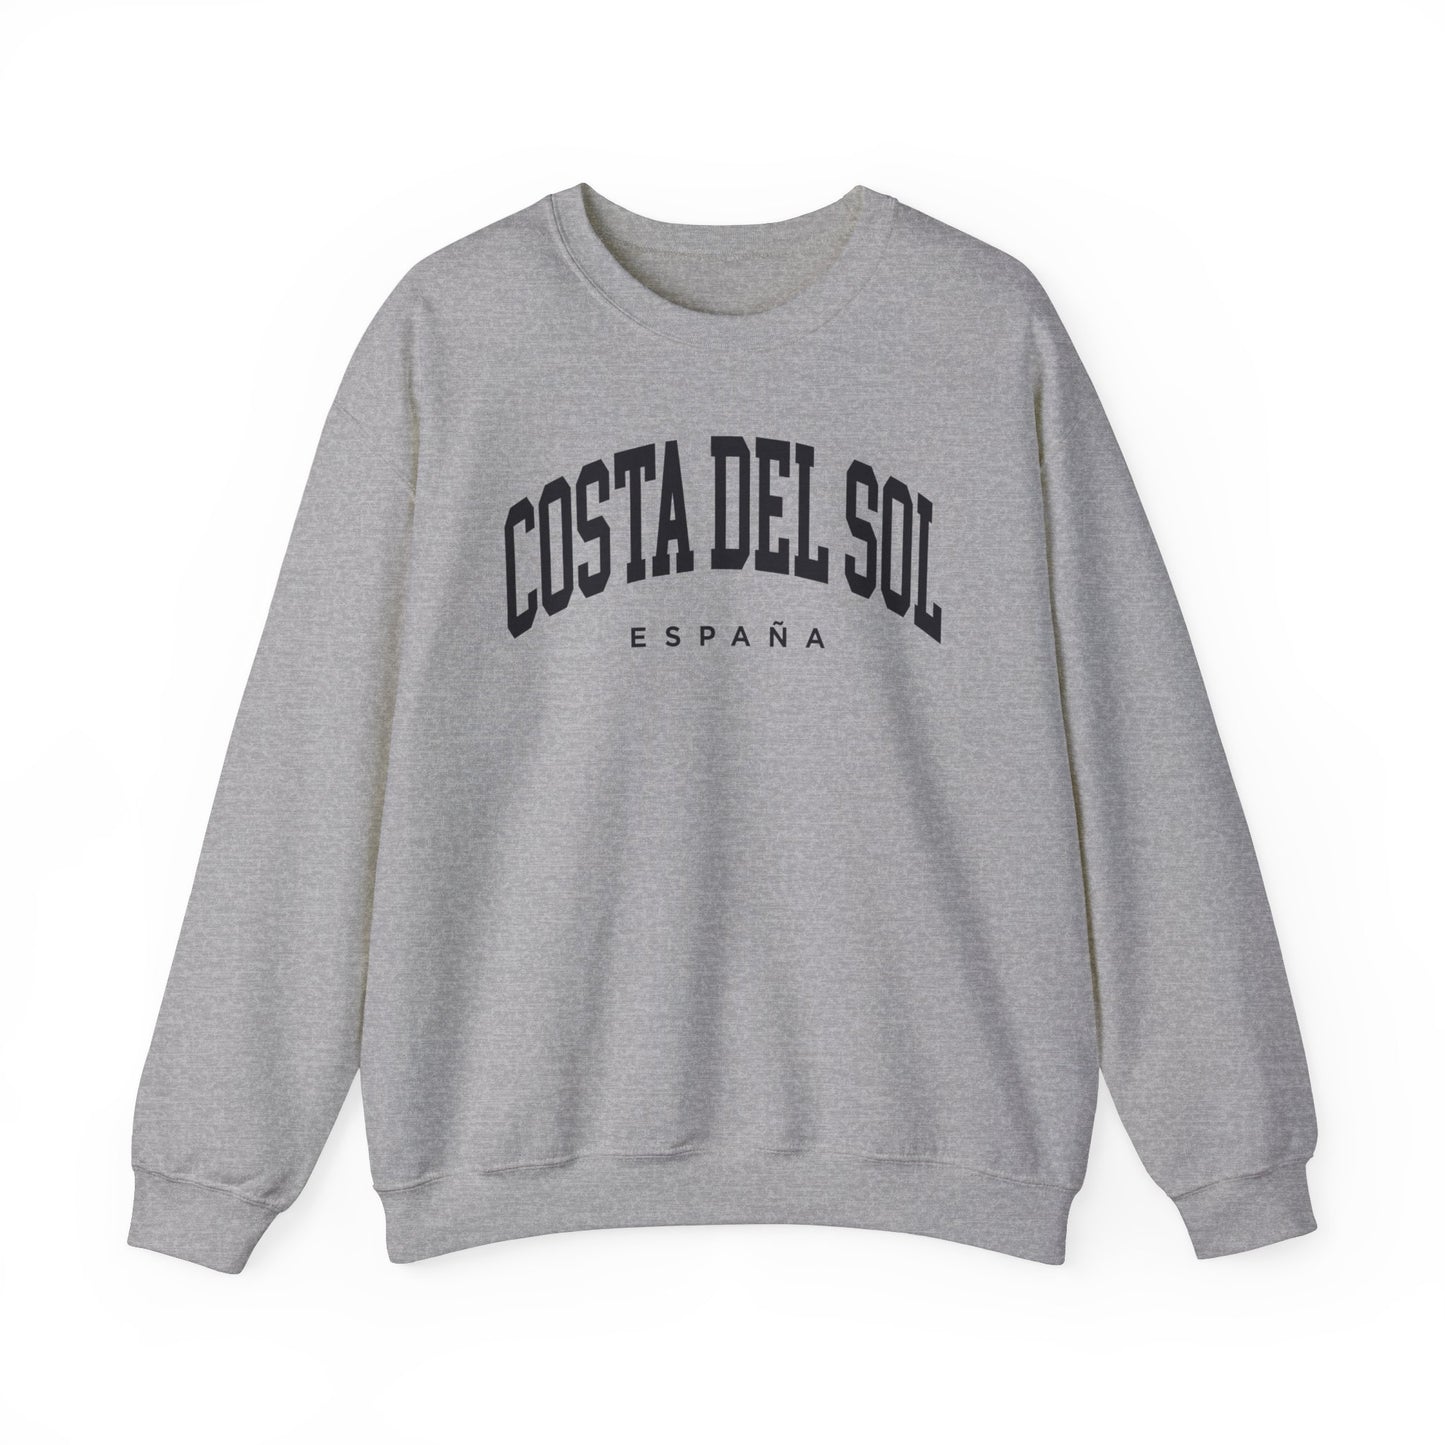 Costa del Sol Spain Sweatshirt